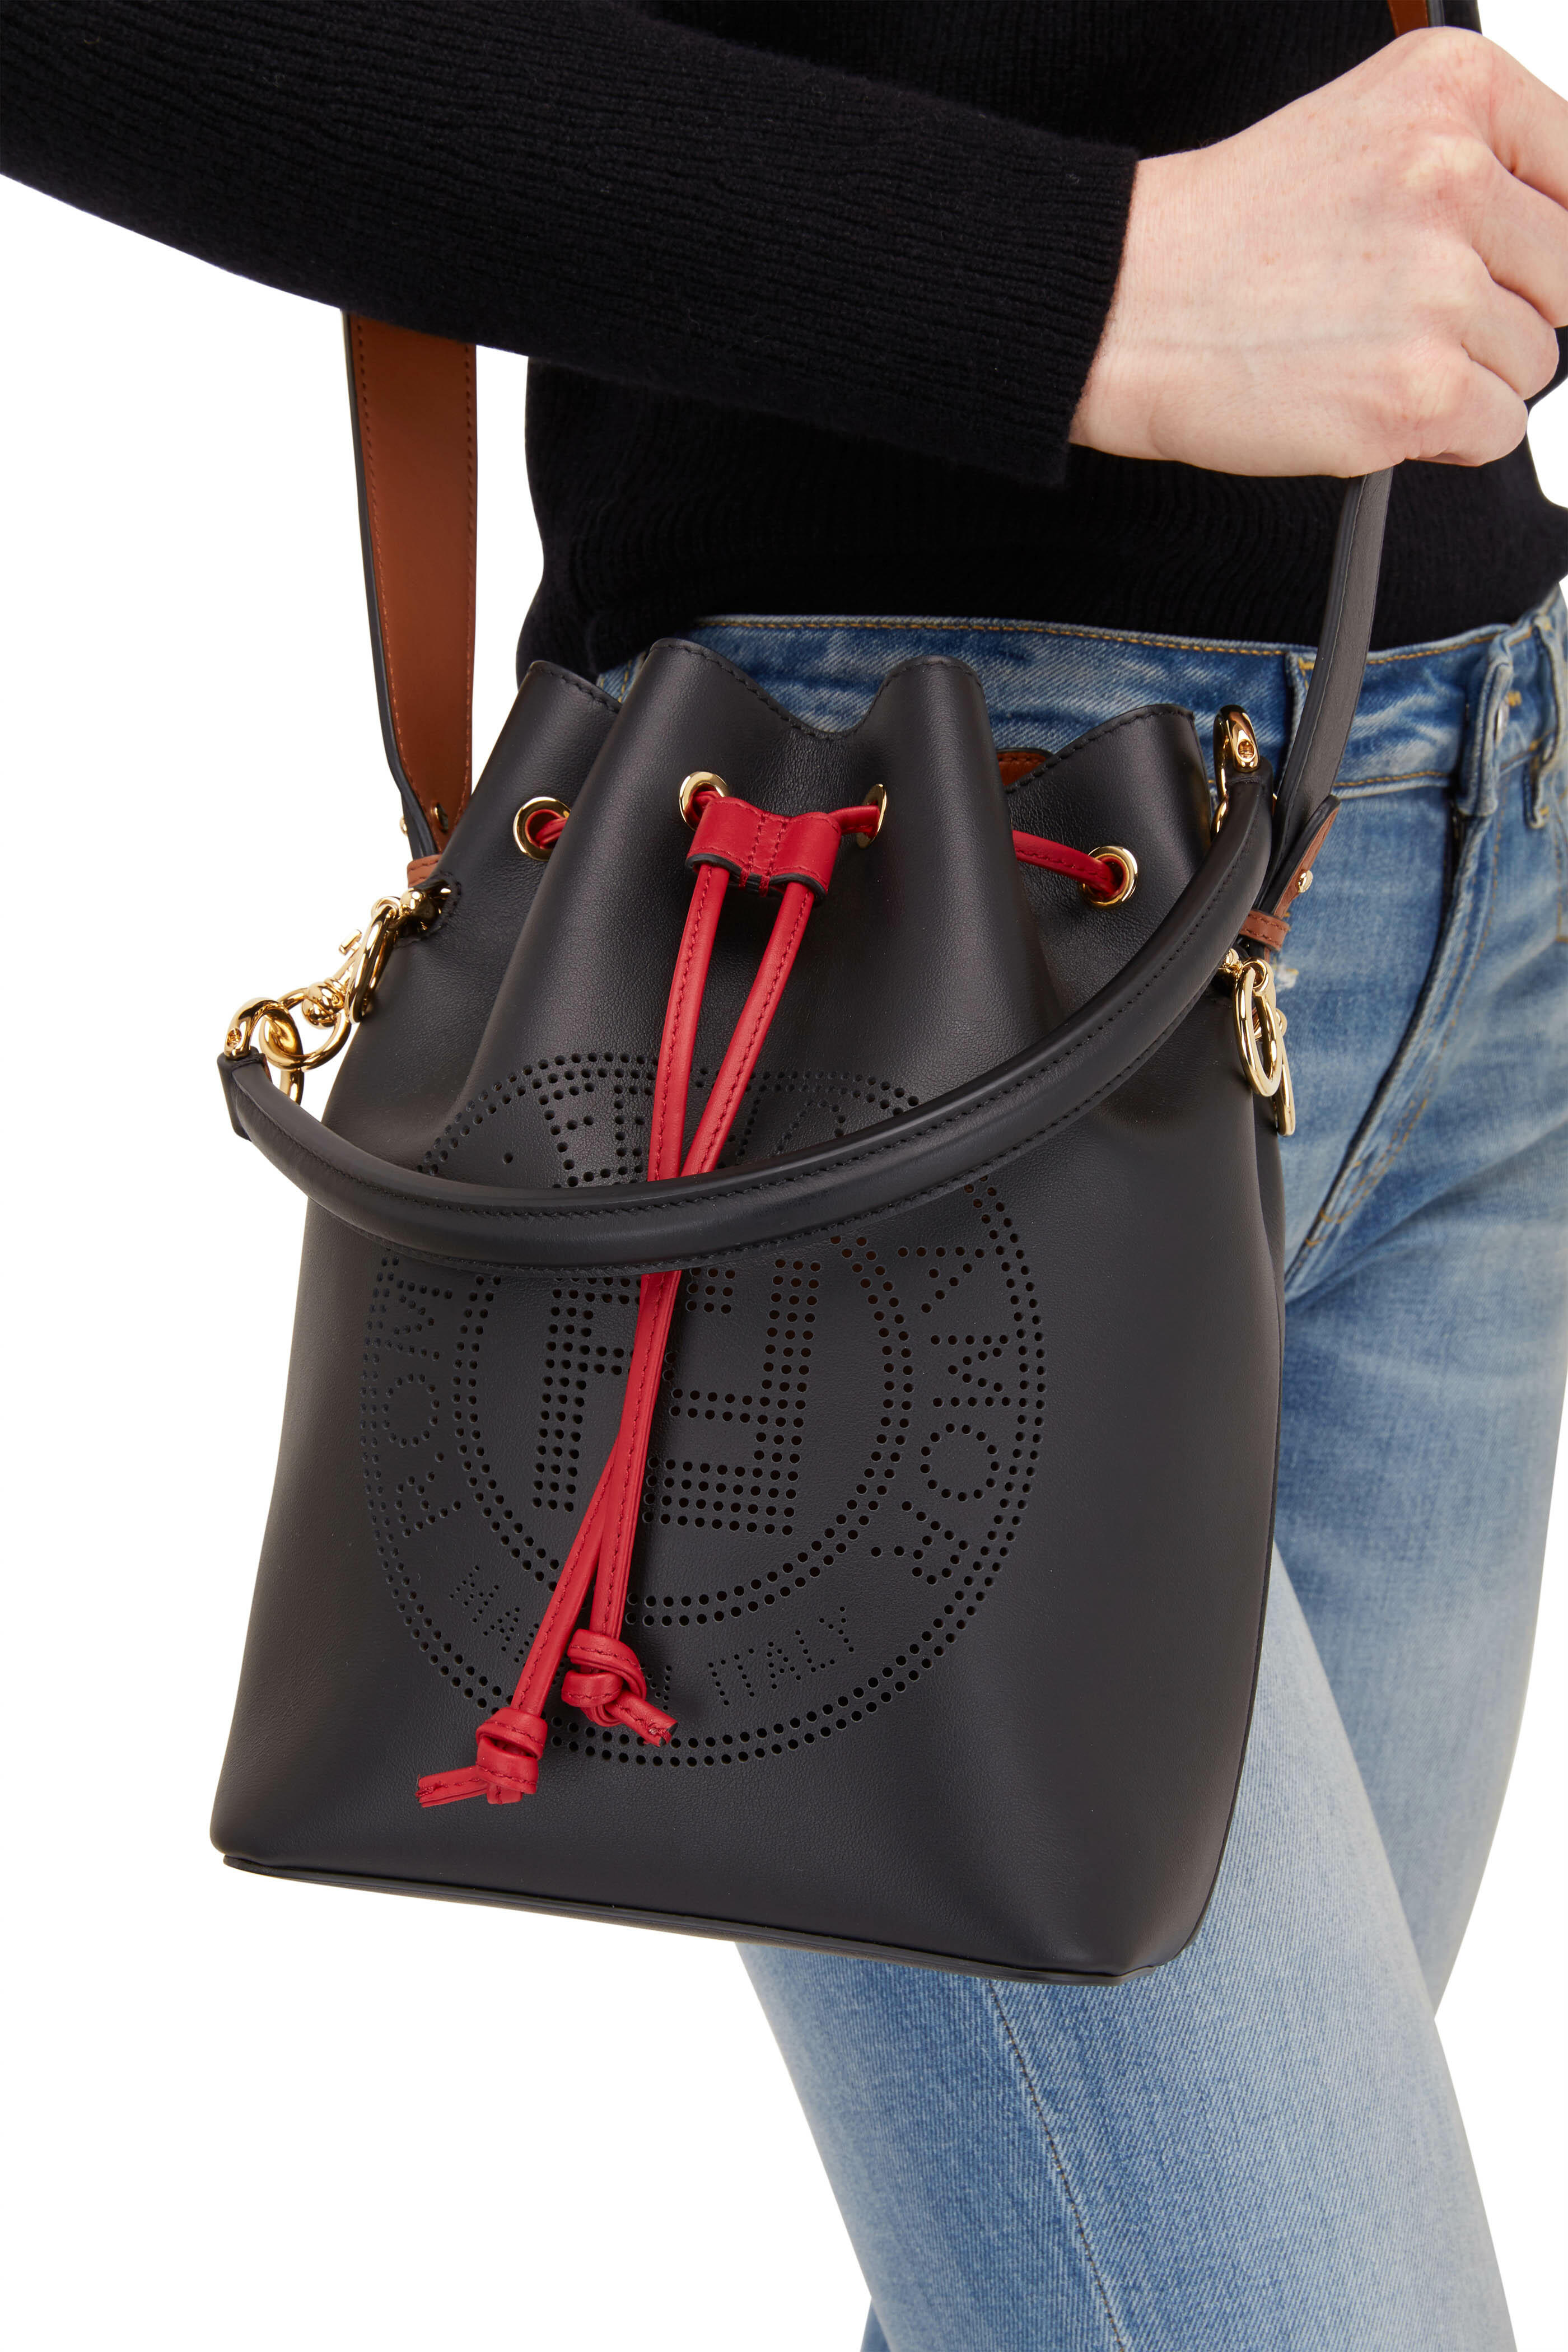 Fendi Mon Tresor Multi Color Bucket Bag (Retail $2290) W